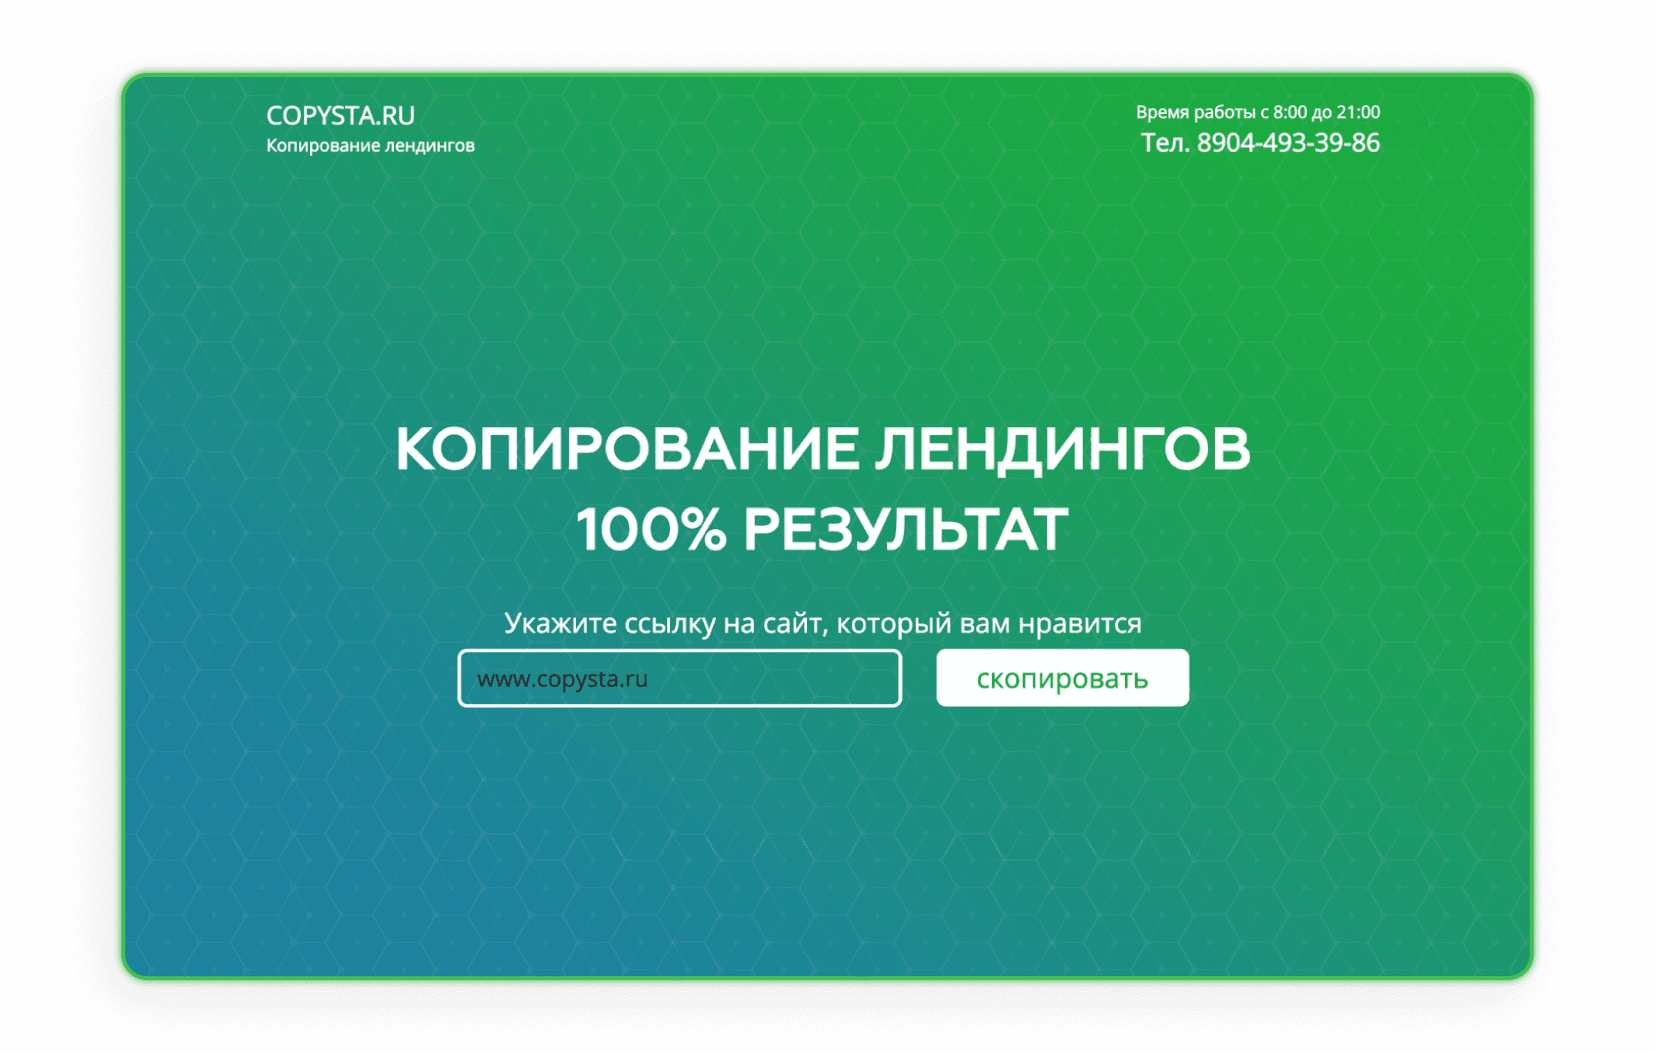 Interfaz de la web de copysta.ru